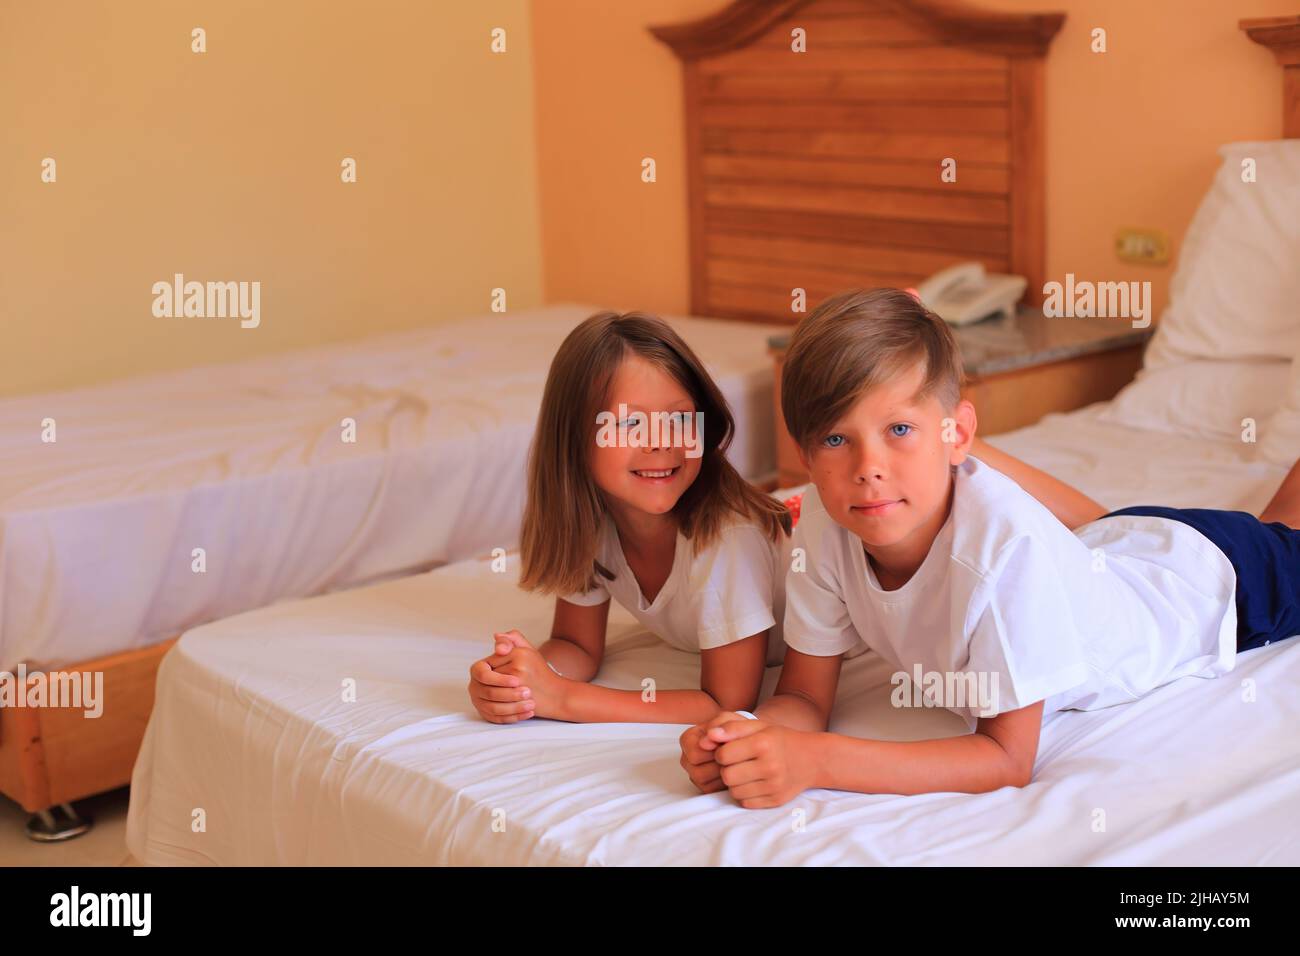 Due bambini si trovano su un letto con lenzuola bianche in una camera d'albergo in vacanza. I bambini giocano sul letto con lenzuola bianche a casa. Ragazzo e ragazza prima di andare a letto a casa Foto Stock